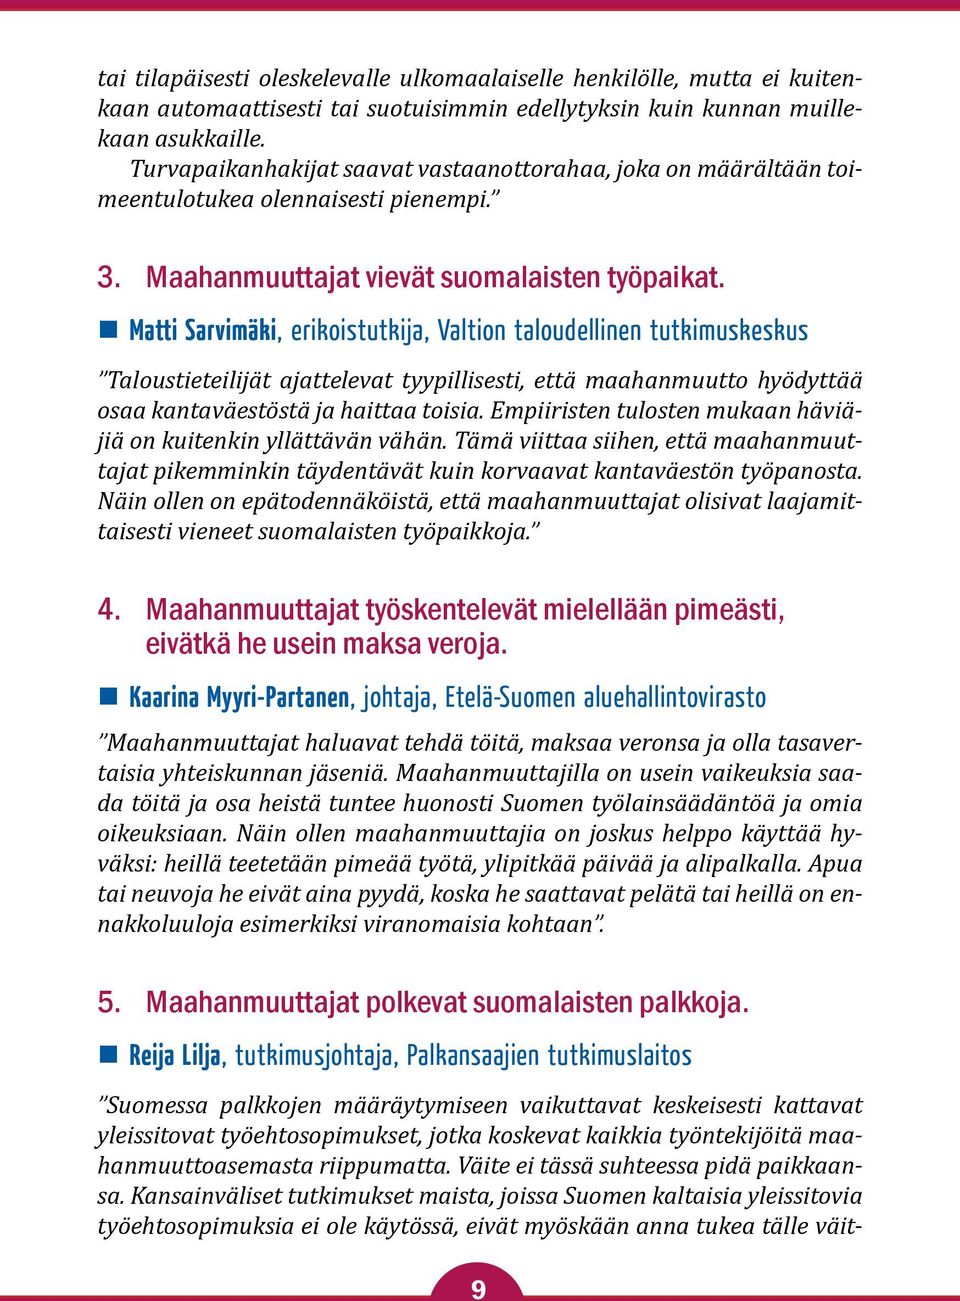 Matti Sarvimäki, erikoistutkija, Valtion taloudellinen tutkimuskeskus Taloustieteilijät ajattelevat tyypillisesti, että maahanmuutto hyödyttää osaa kantaväestöstä ja haittaa toisia.